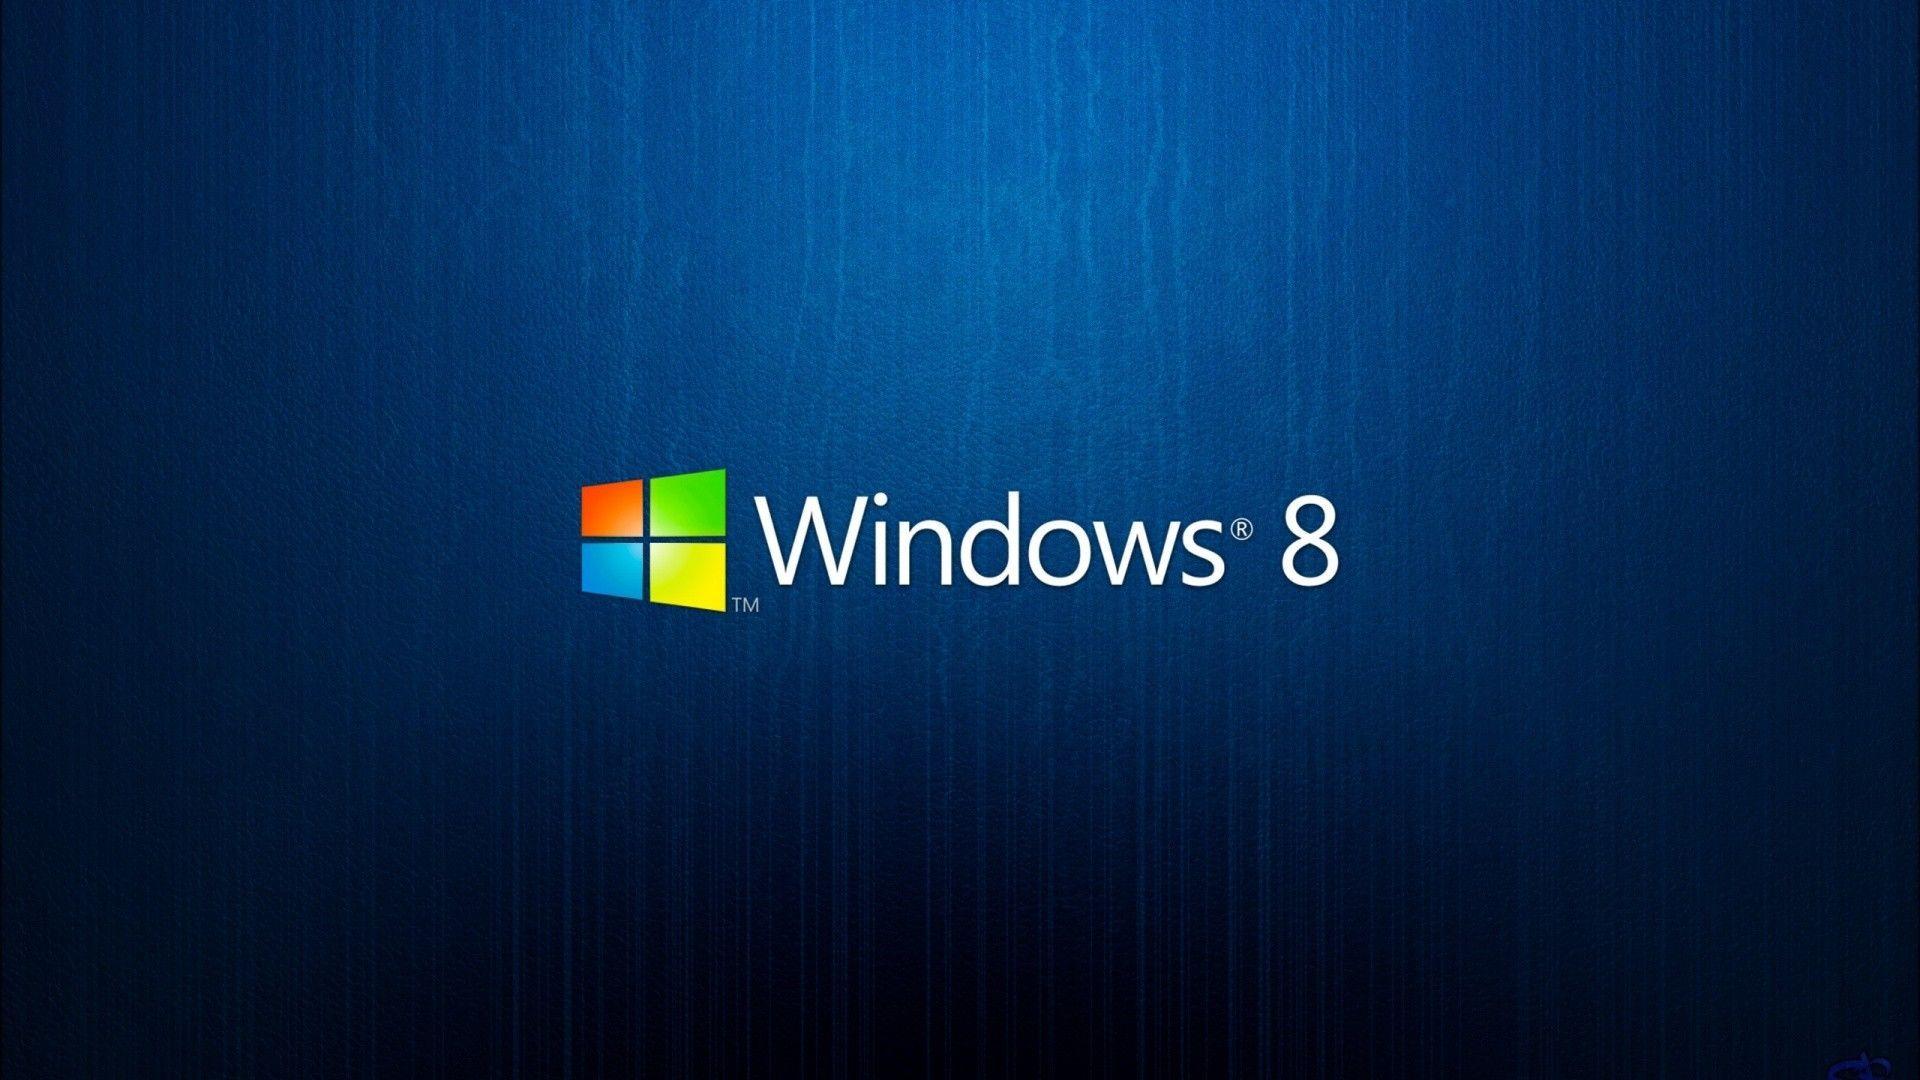 Best Windows Desktop Logo 3 HD Image Wallpaper. HD Image Wallpaper